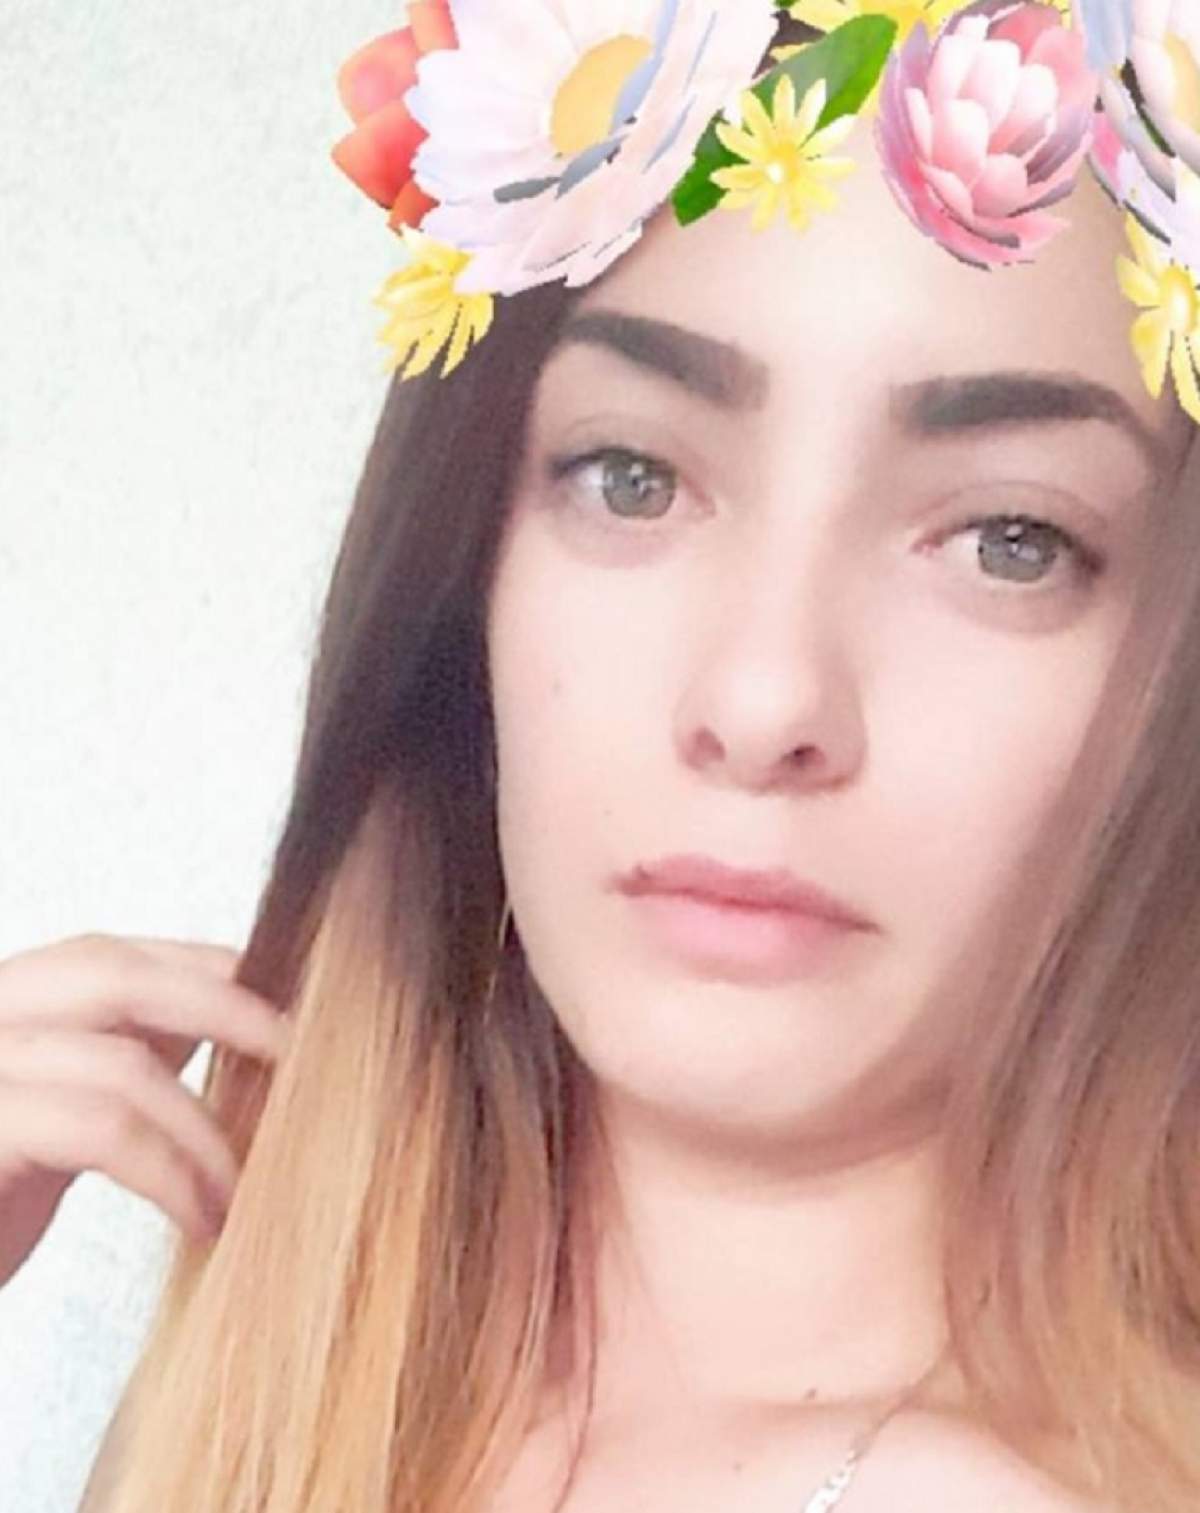 Durere fără margini în familia tinerei din Huși, găsită spânzurată la 17 ani: "Îmi plânge sufletul pentru tine"